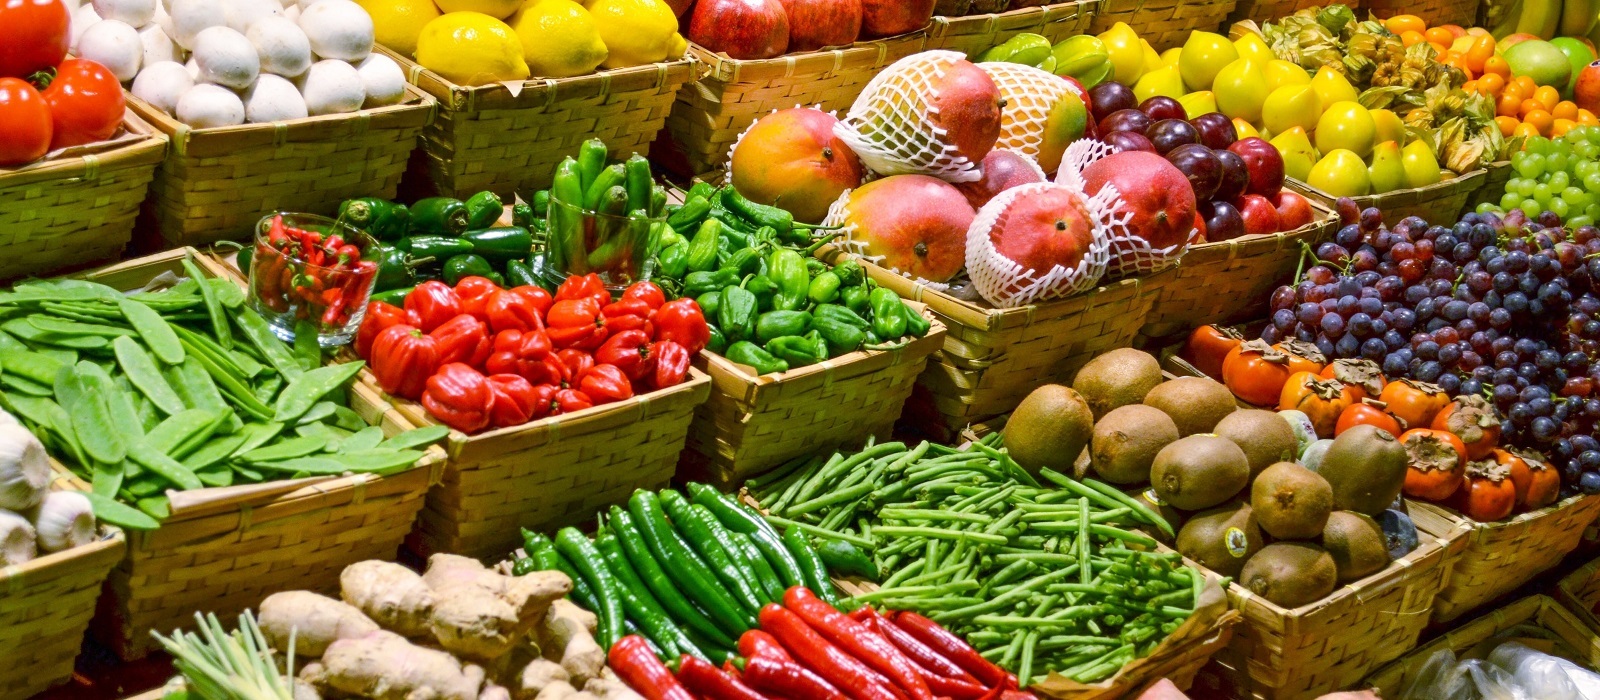 Самые опасные и безопасные летние фрукты и овощи